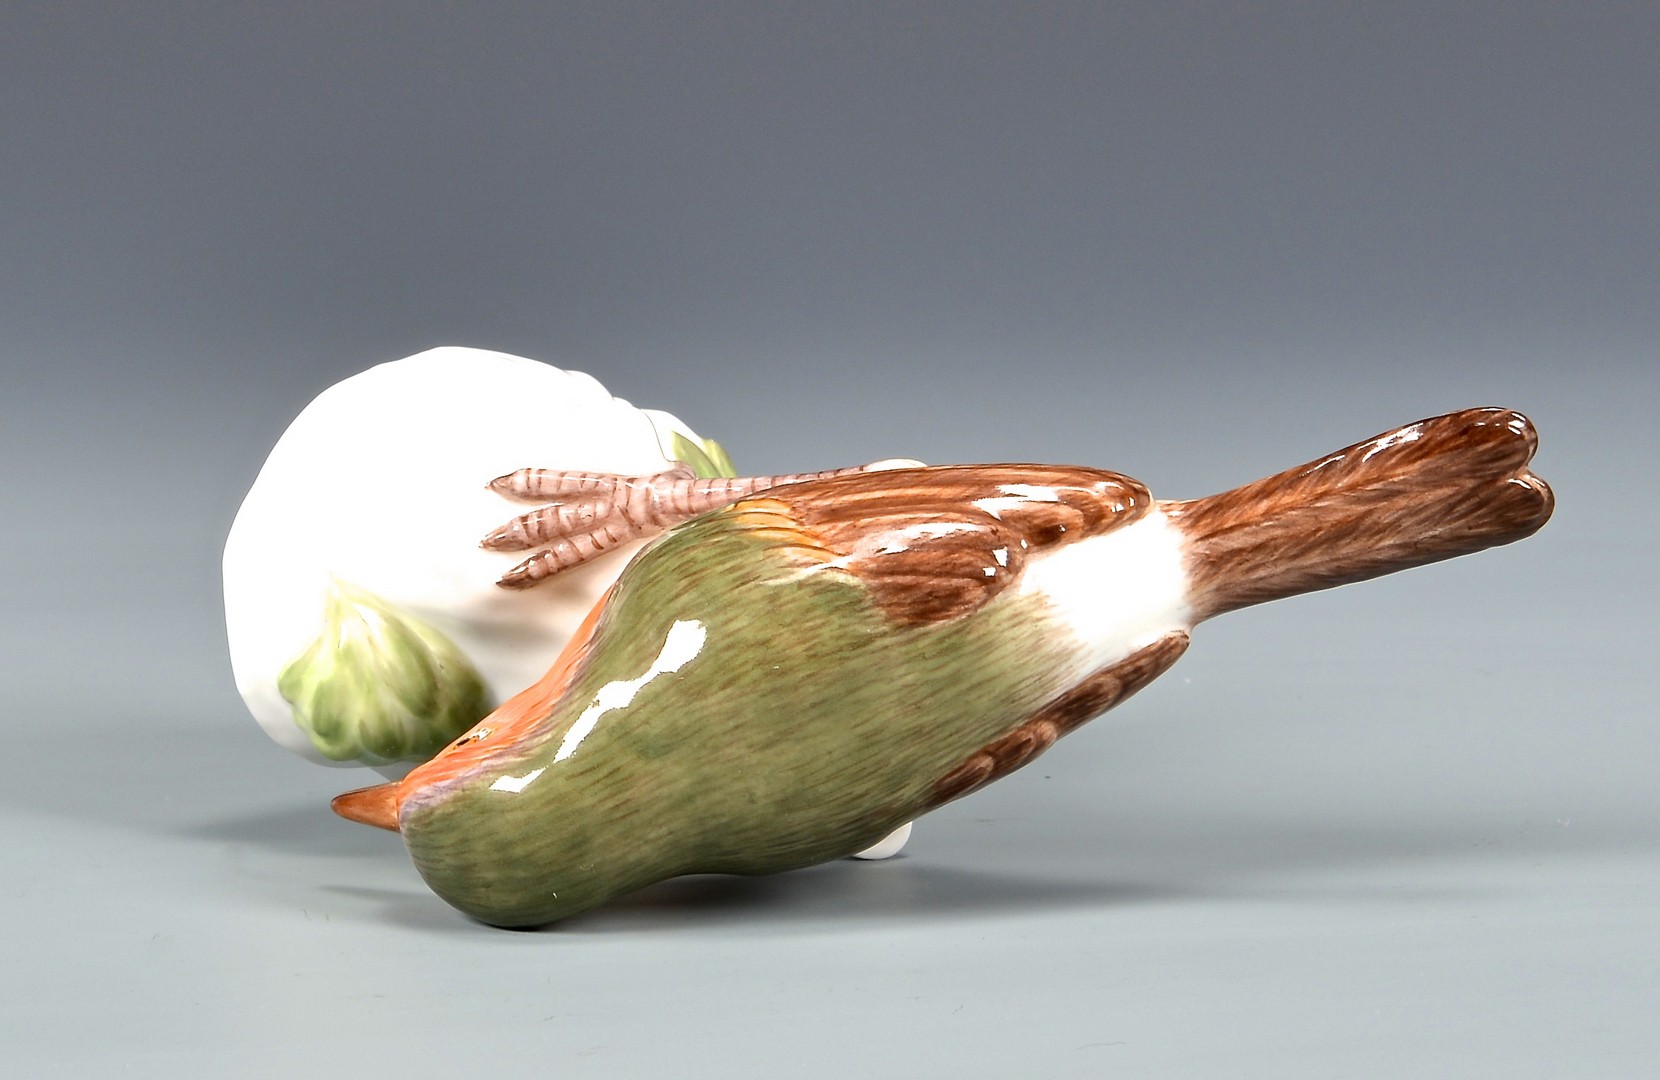 Lot 586: Meissen Porcelain Sparrow Figurine